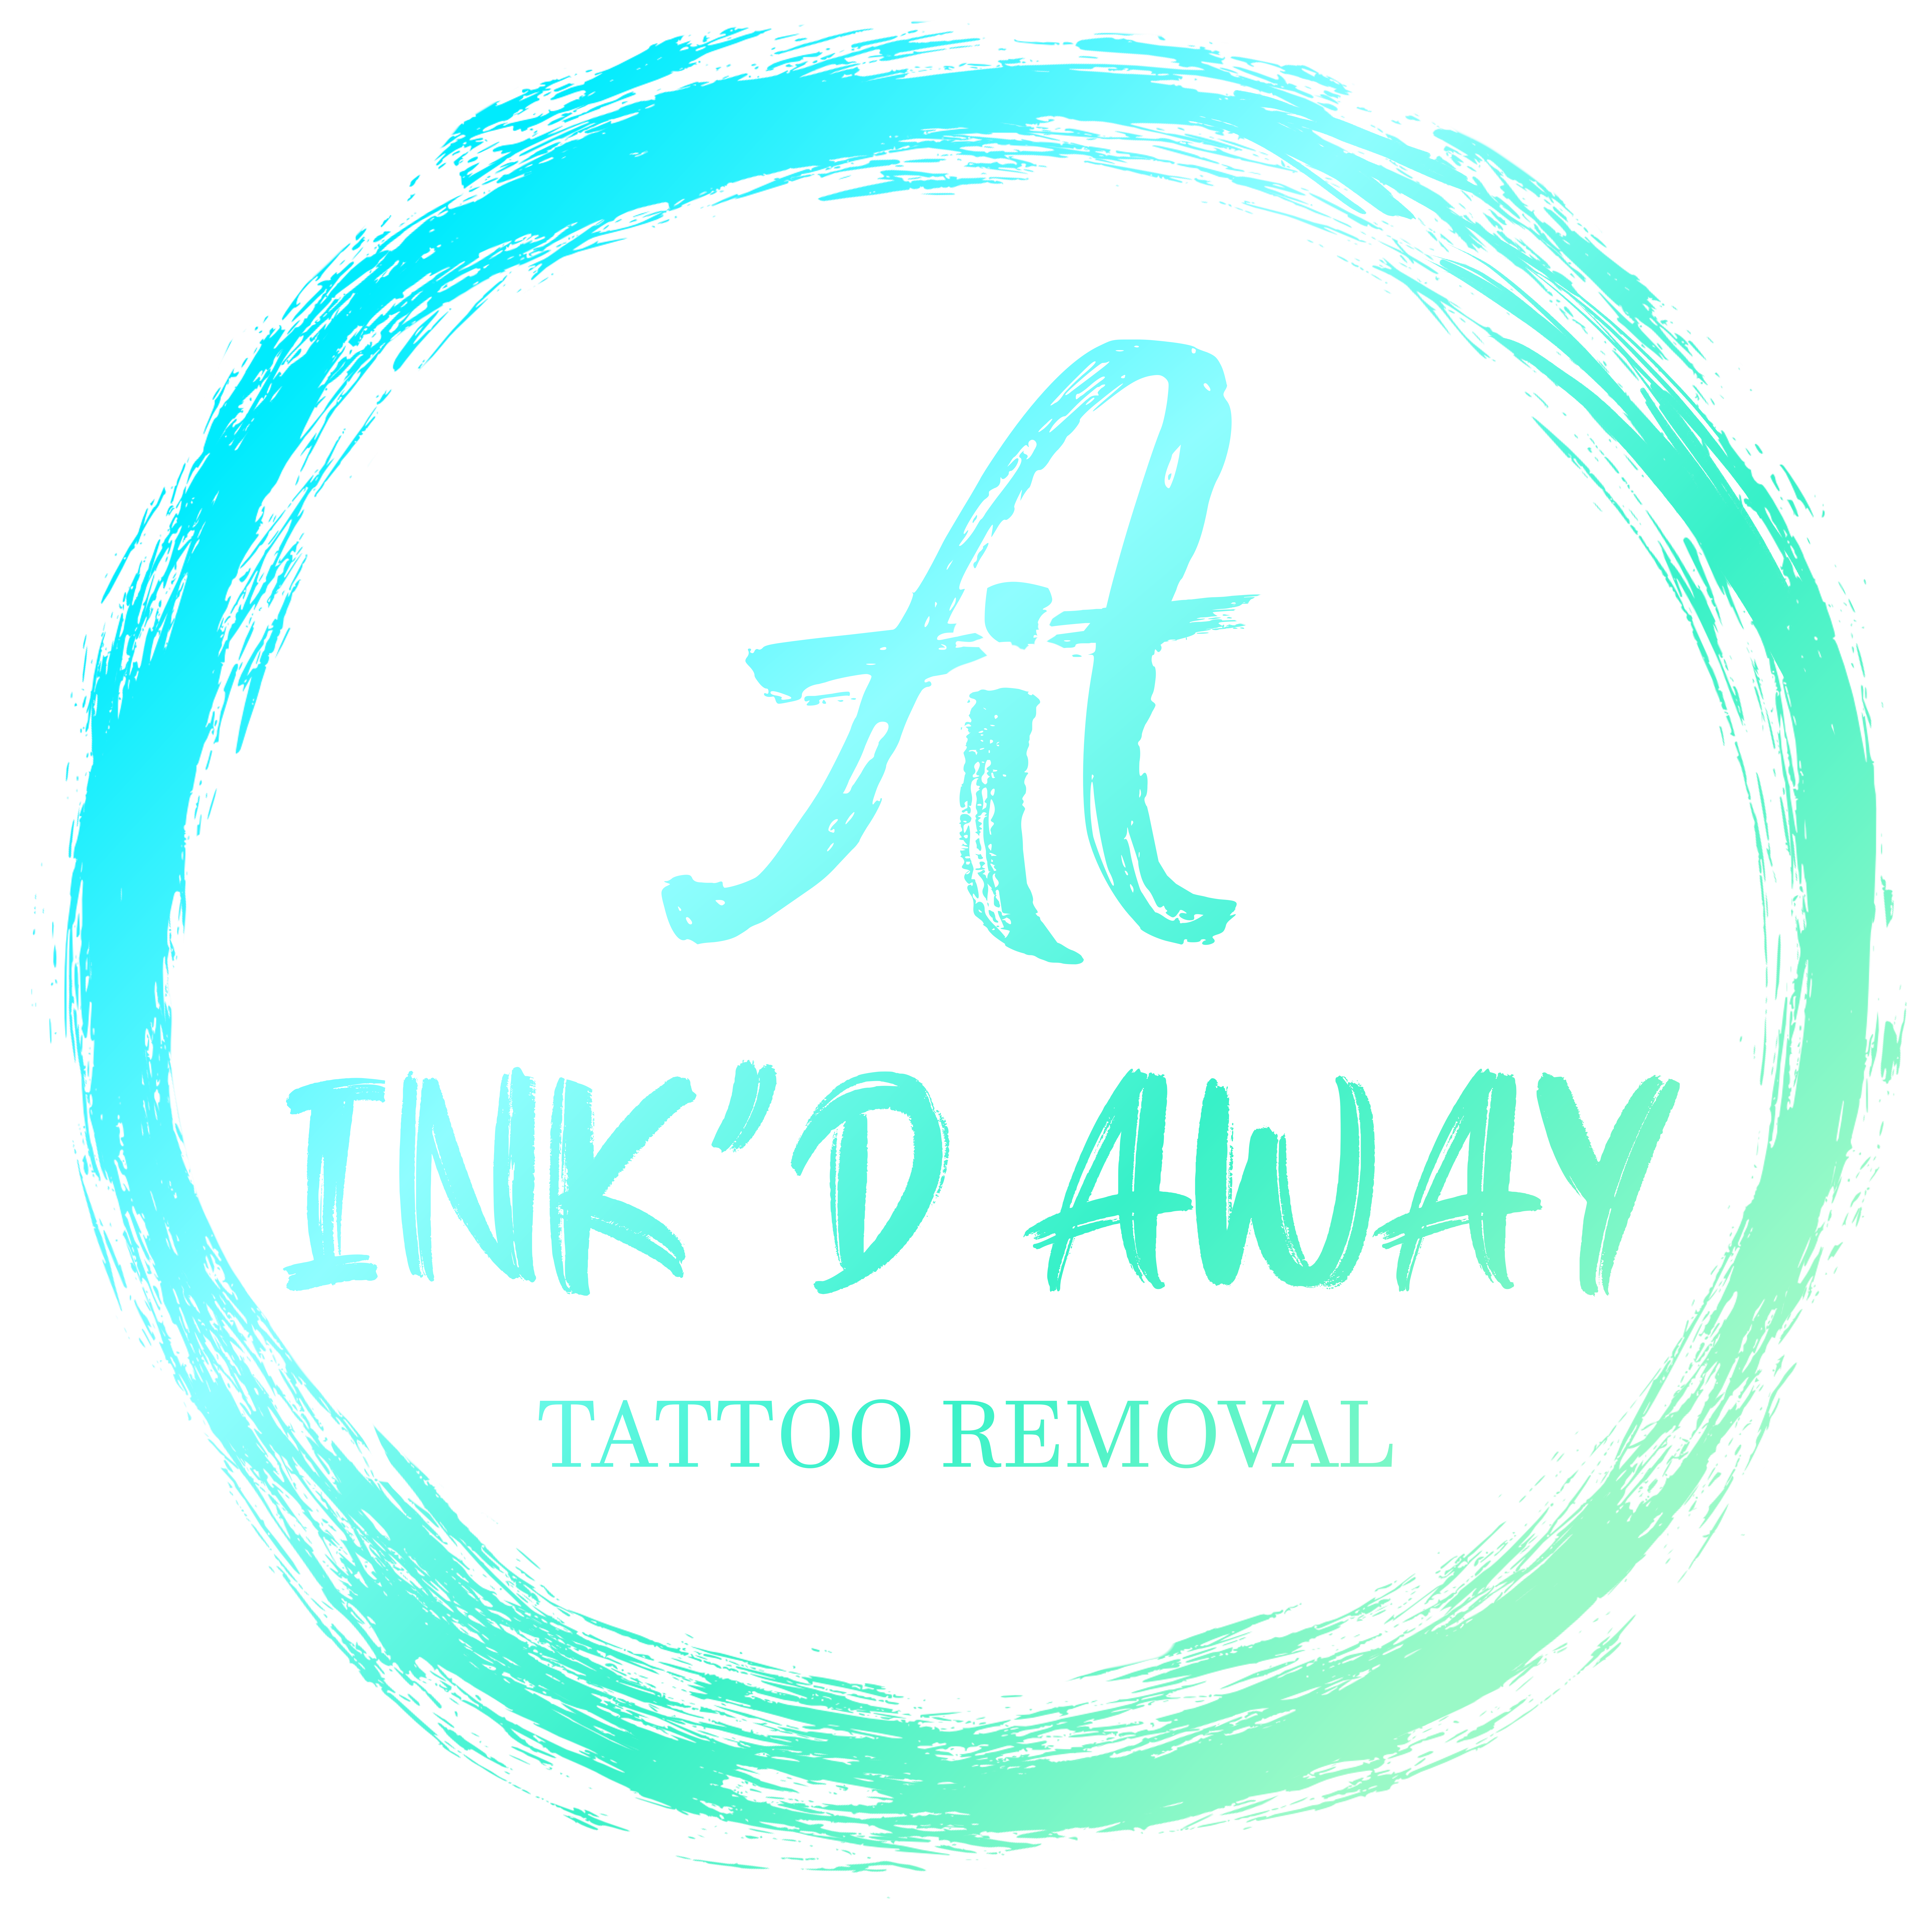 Ink’d Away